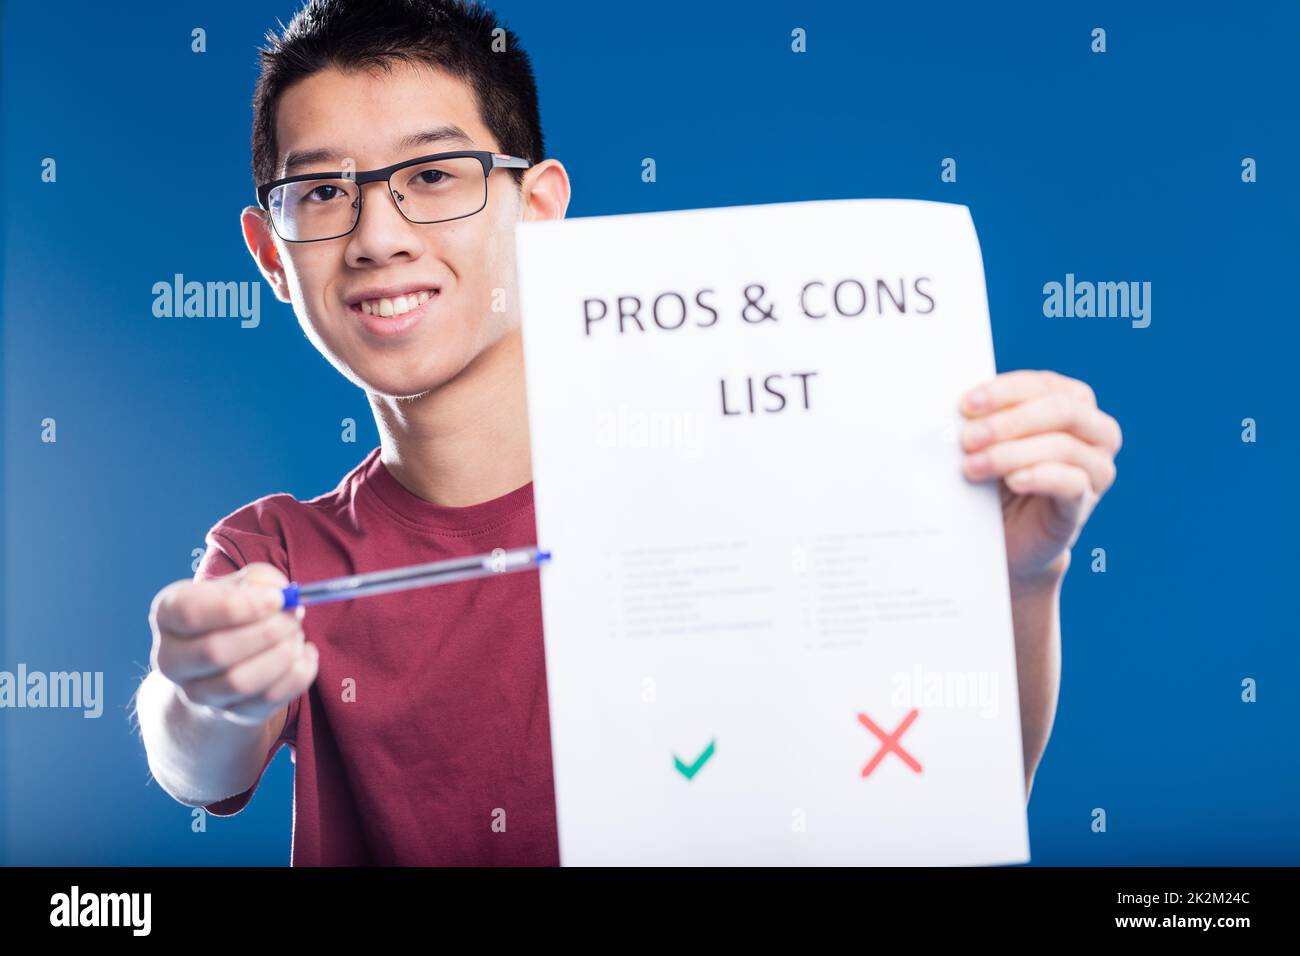 ragazzo asiatico felice mostrando una lista di pro e contro Foto Stock